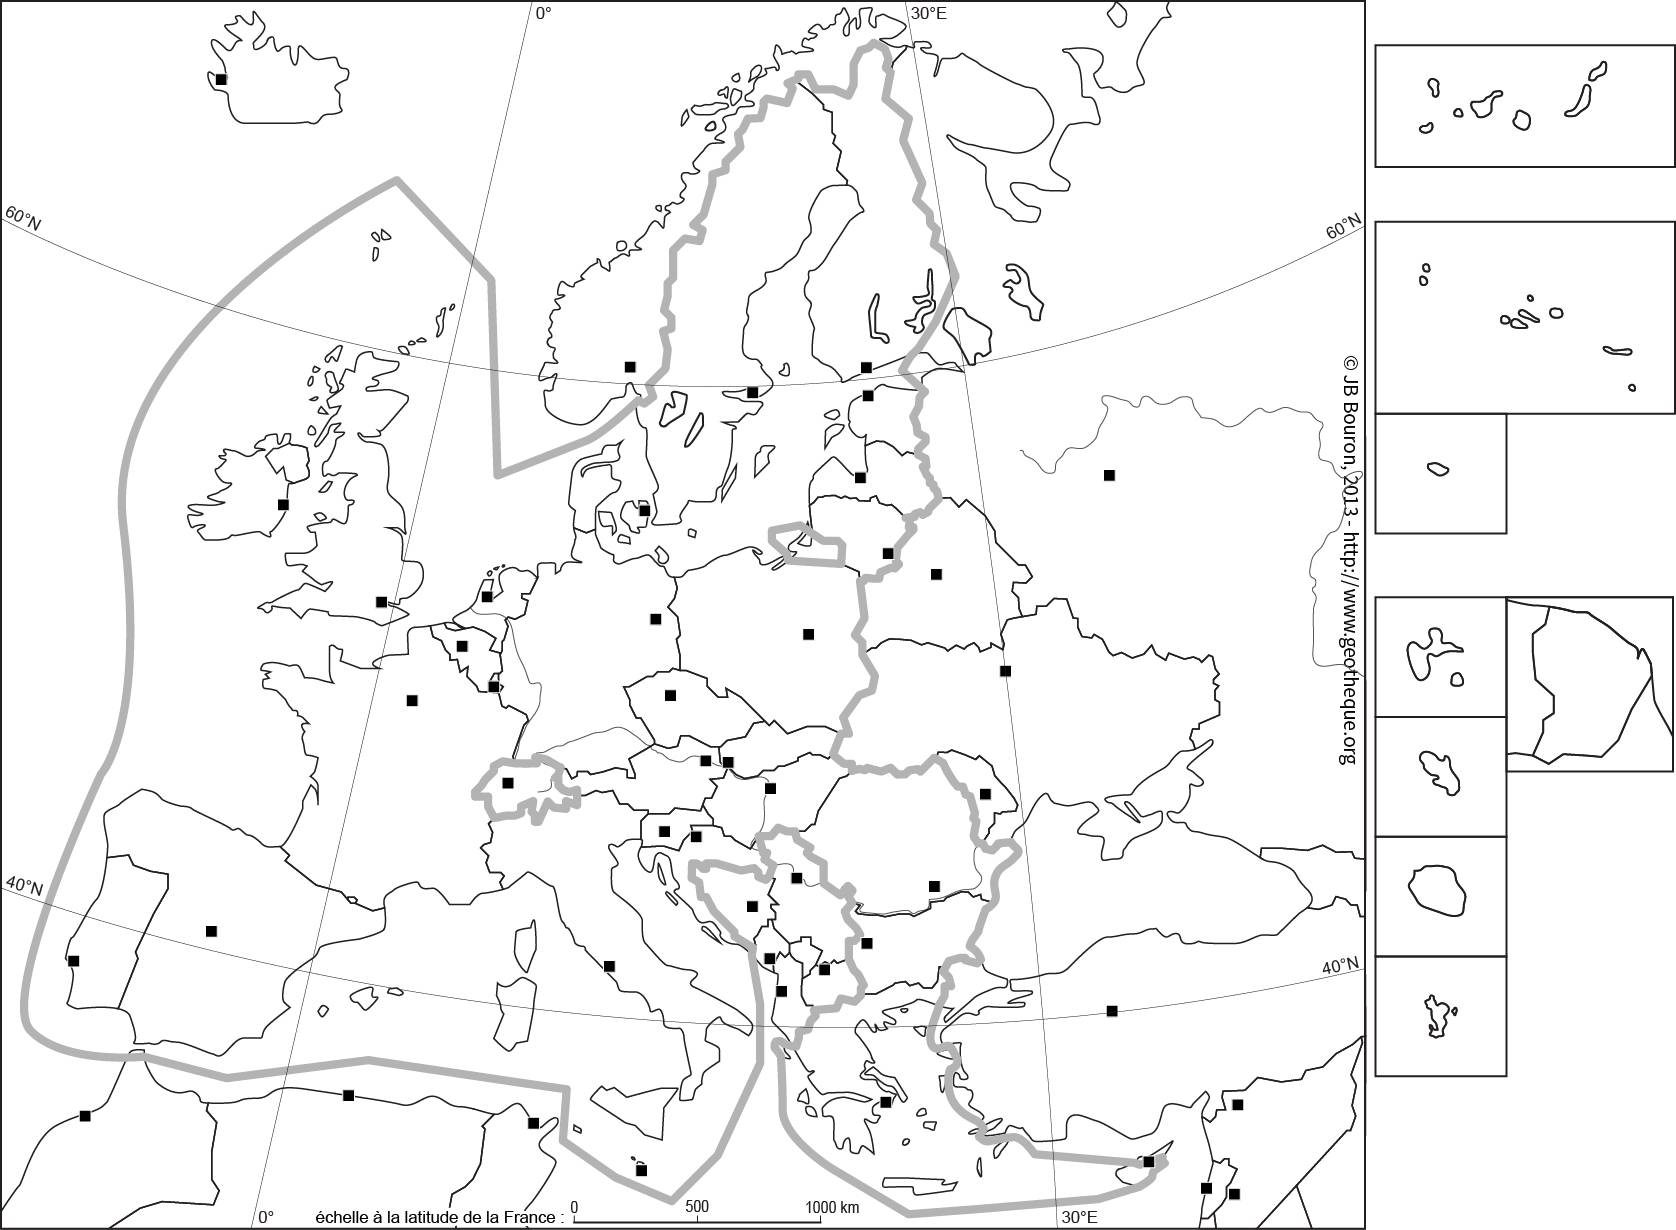 Fond De Carte En Noir Et Blanc De L'ue28. Eu28 Map tout Union Européenne Carte Vierge